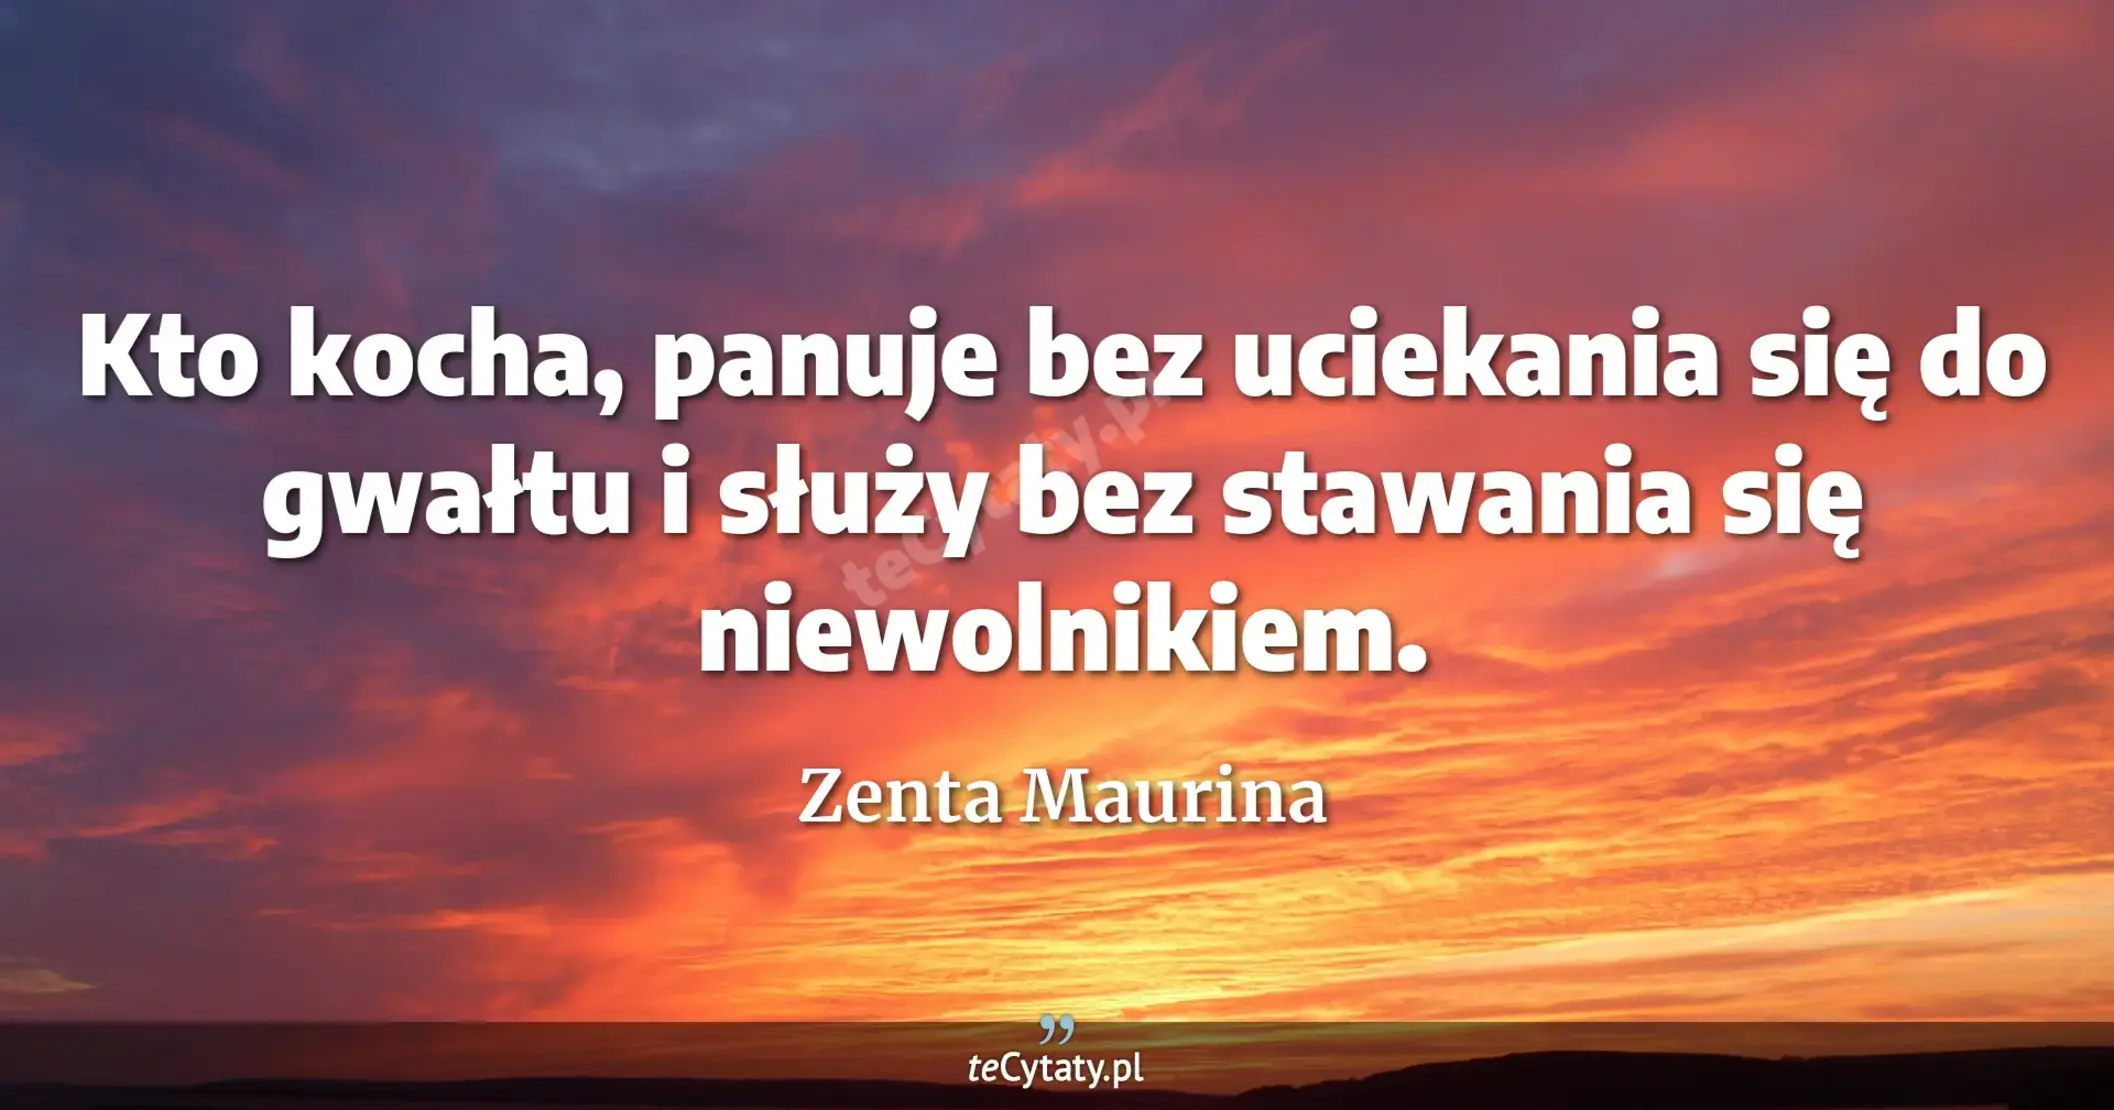 Kto kocha, panuje bez uciekania się do gwałtu i służy bez stawania się niewolnikiem. - Zenta Maurina